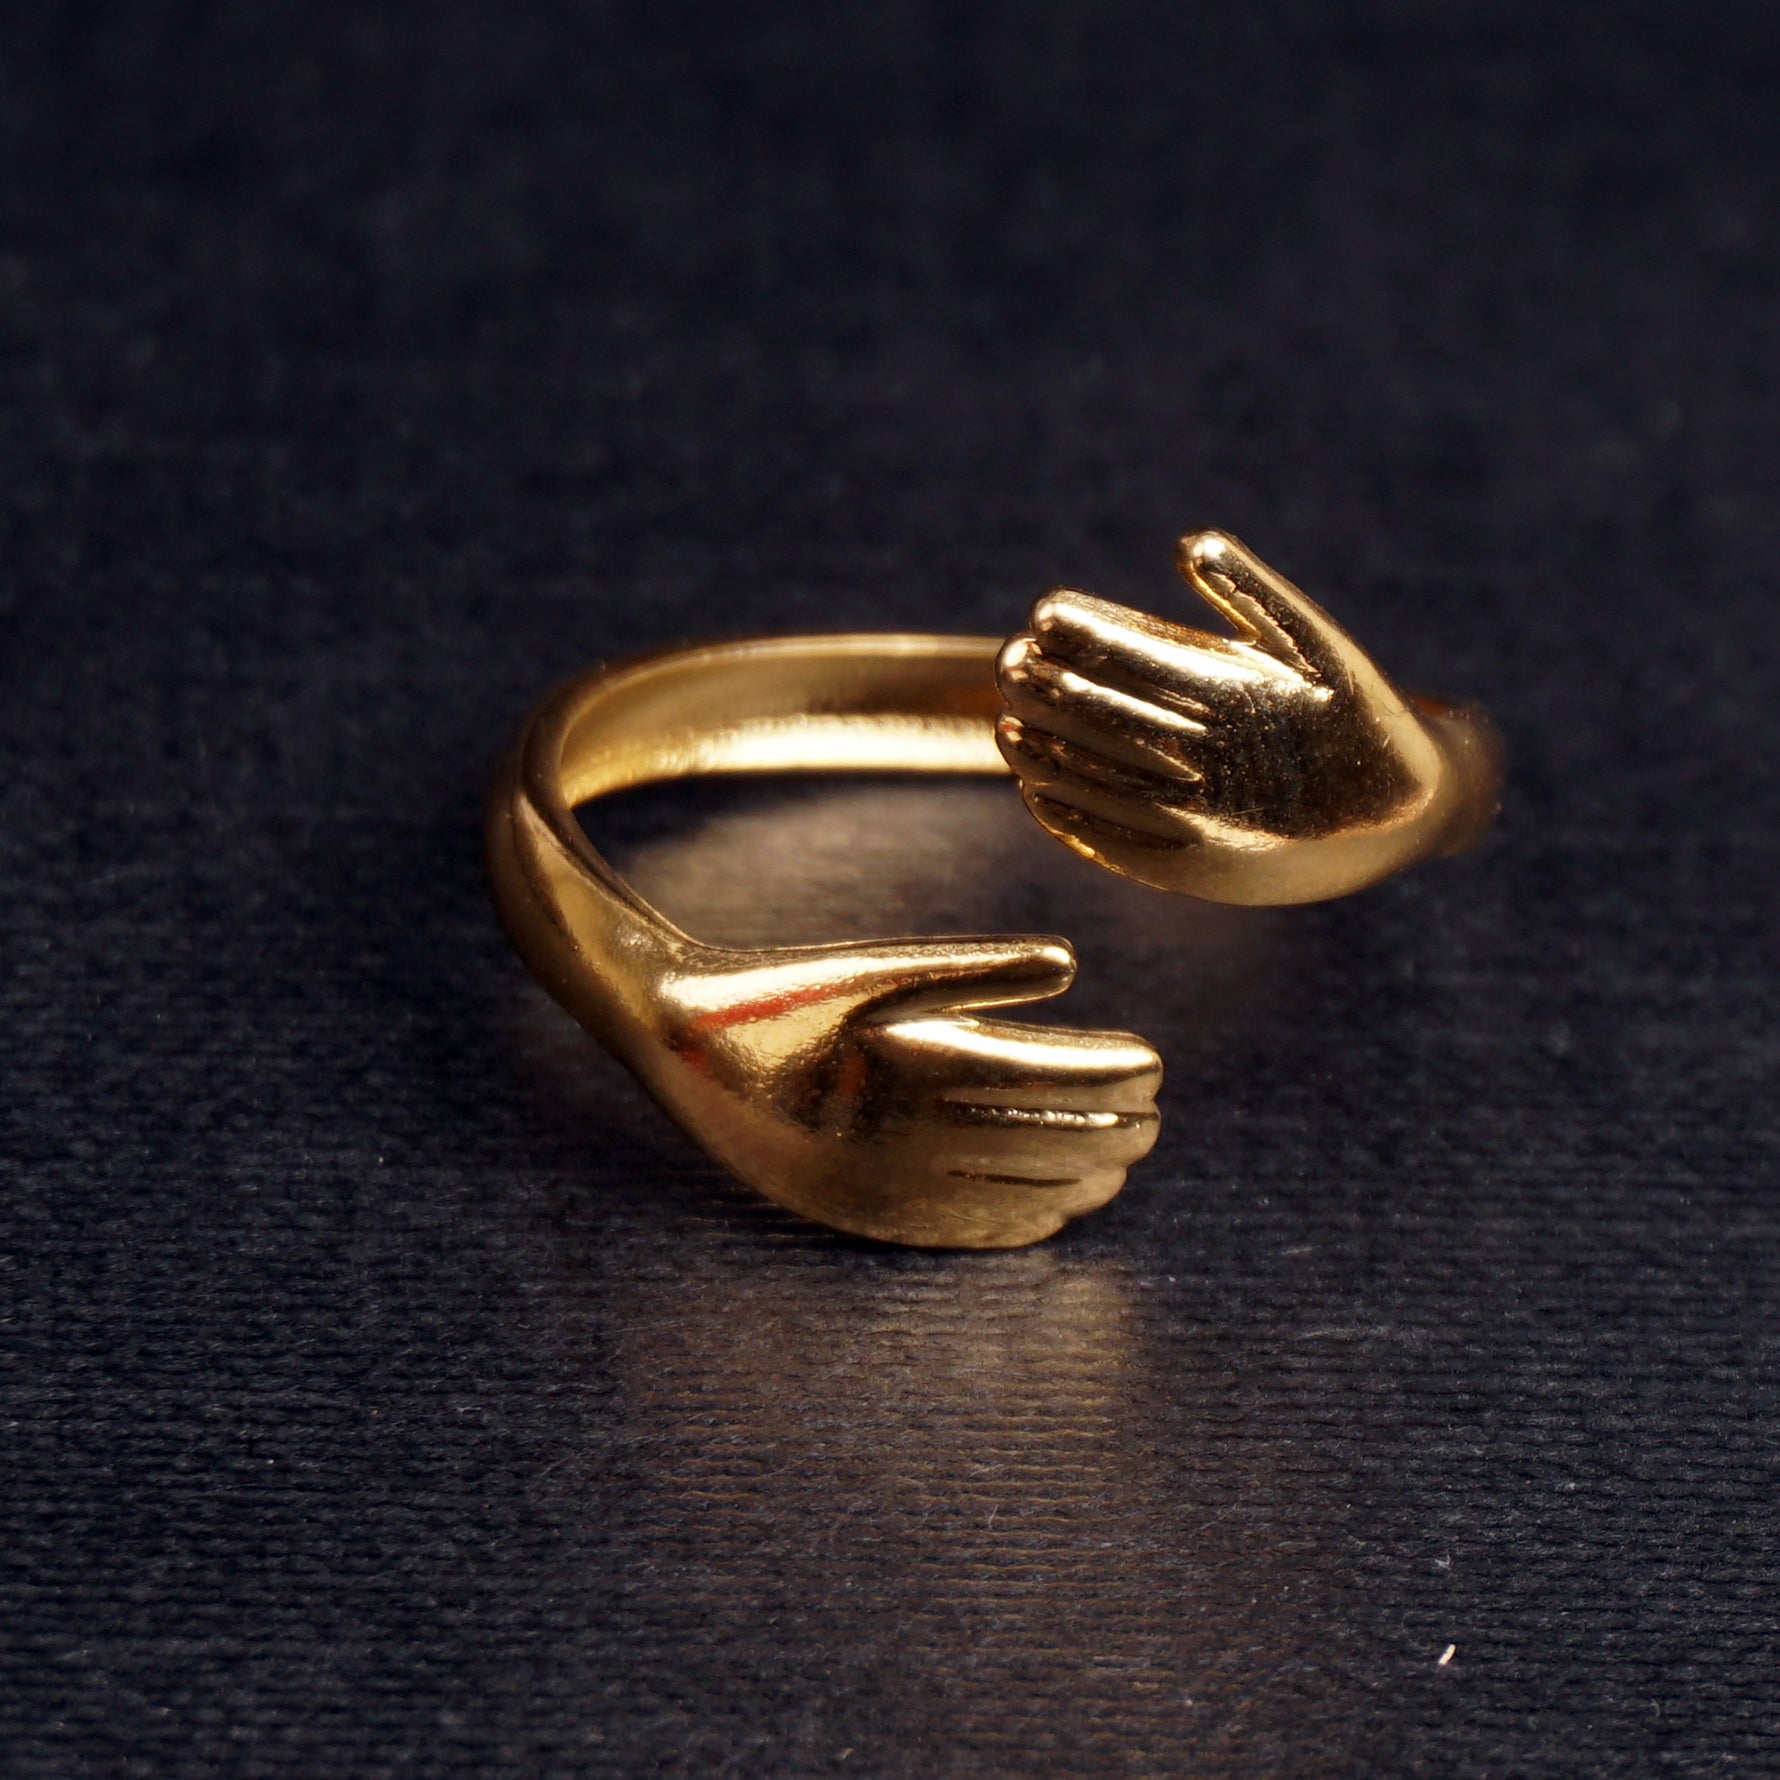 Stainless Steel Rings Hugs Design Golden